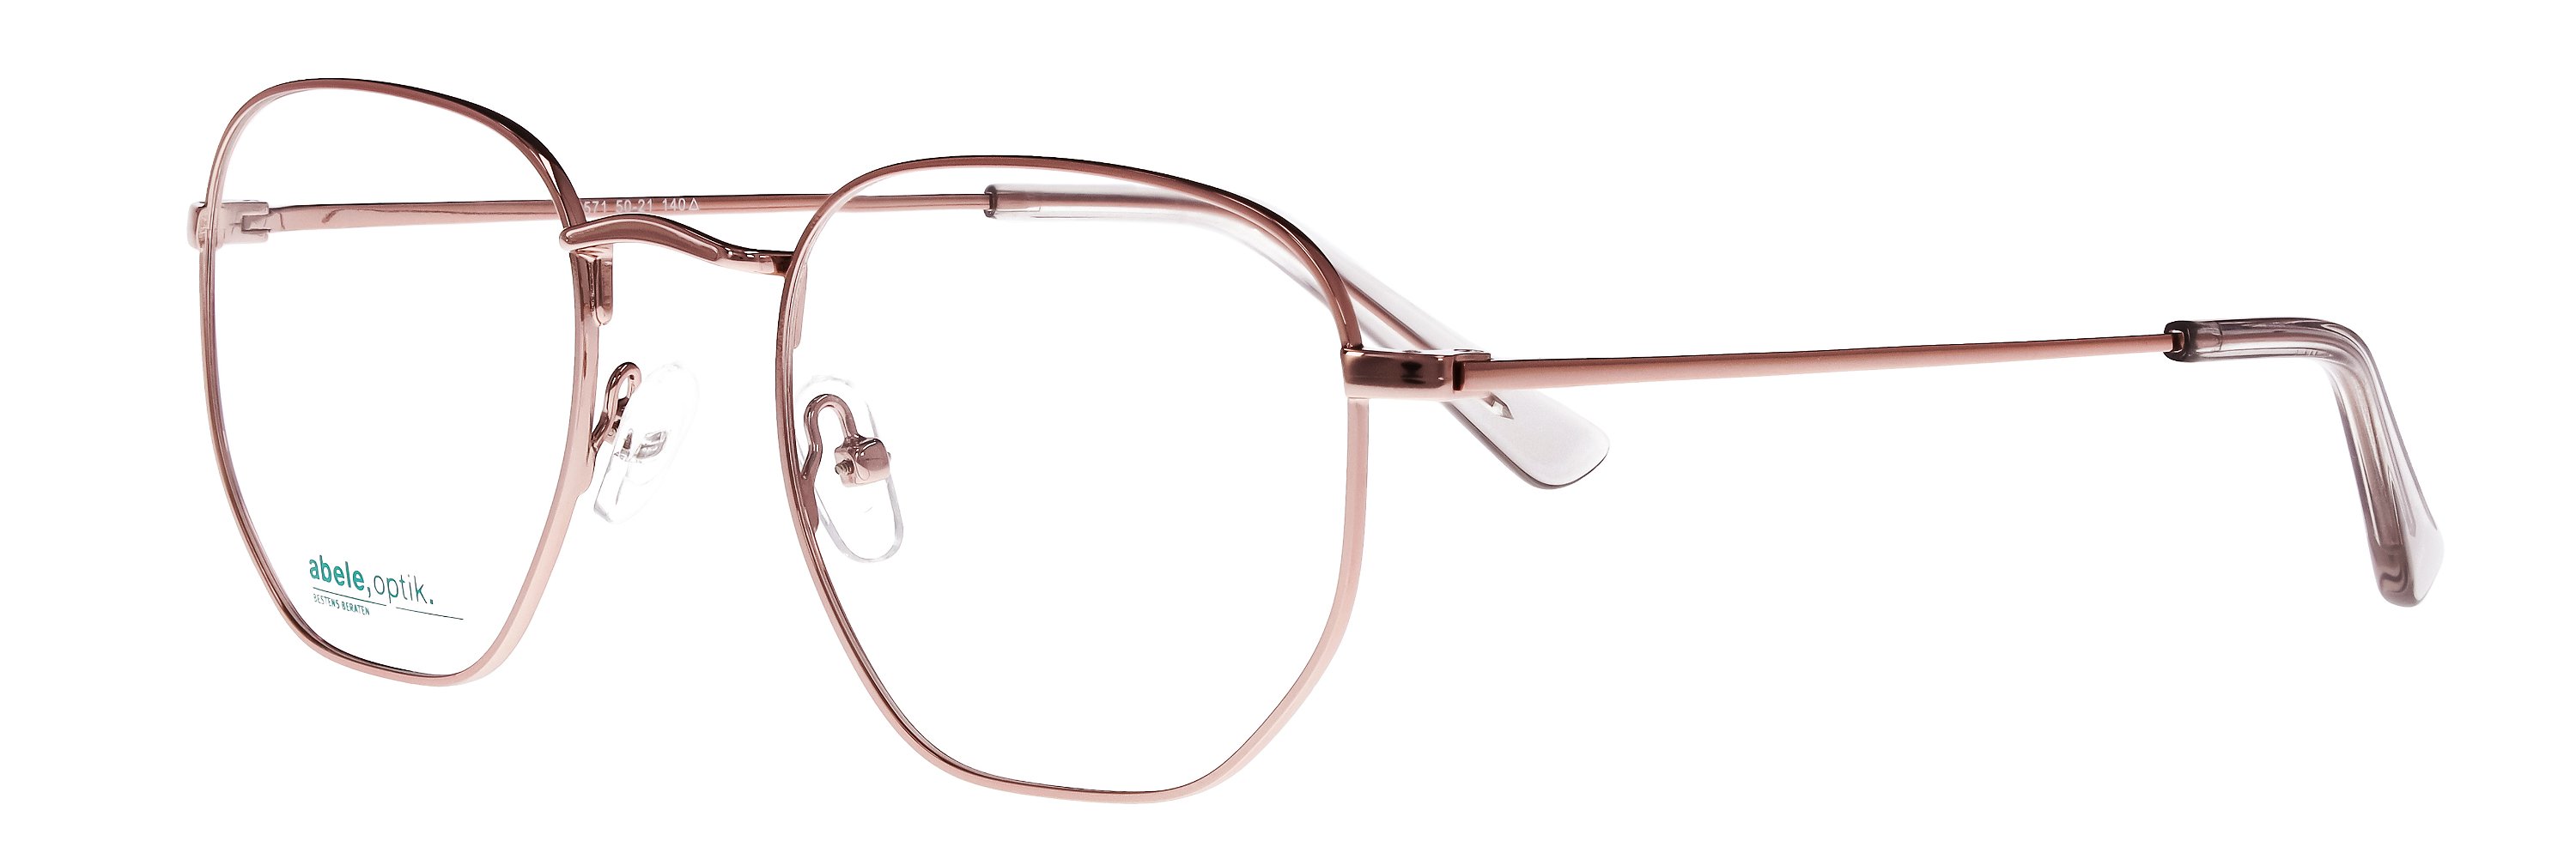 Das Bild zeigt die Korrektionsbrille 148571 von der Marke Abele Optik in rosé-weiß.